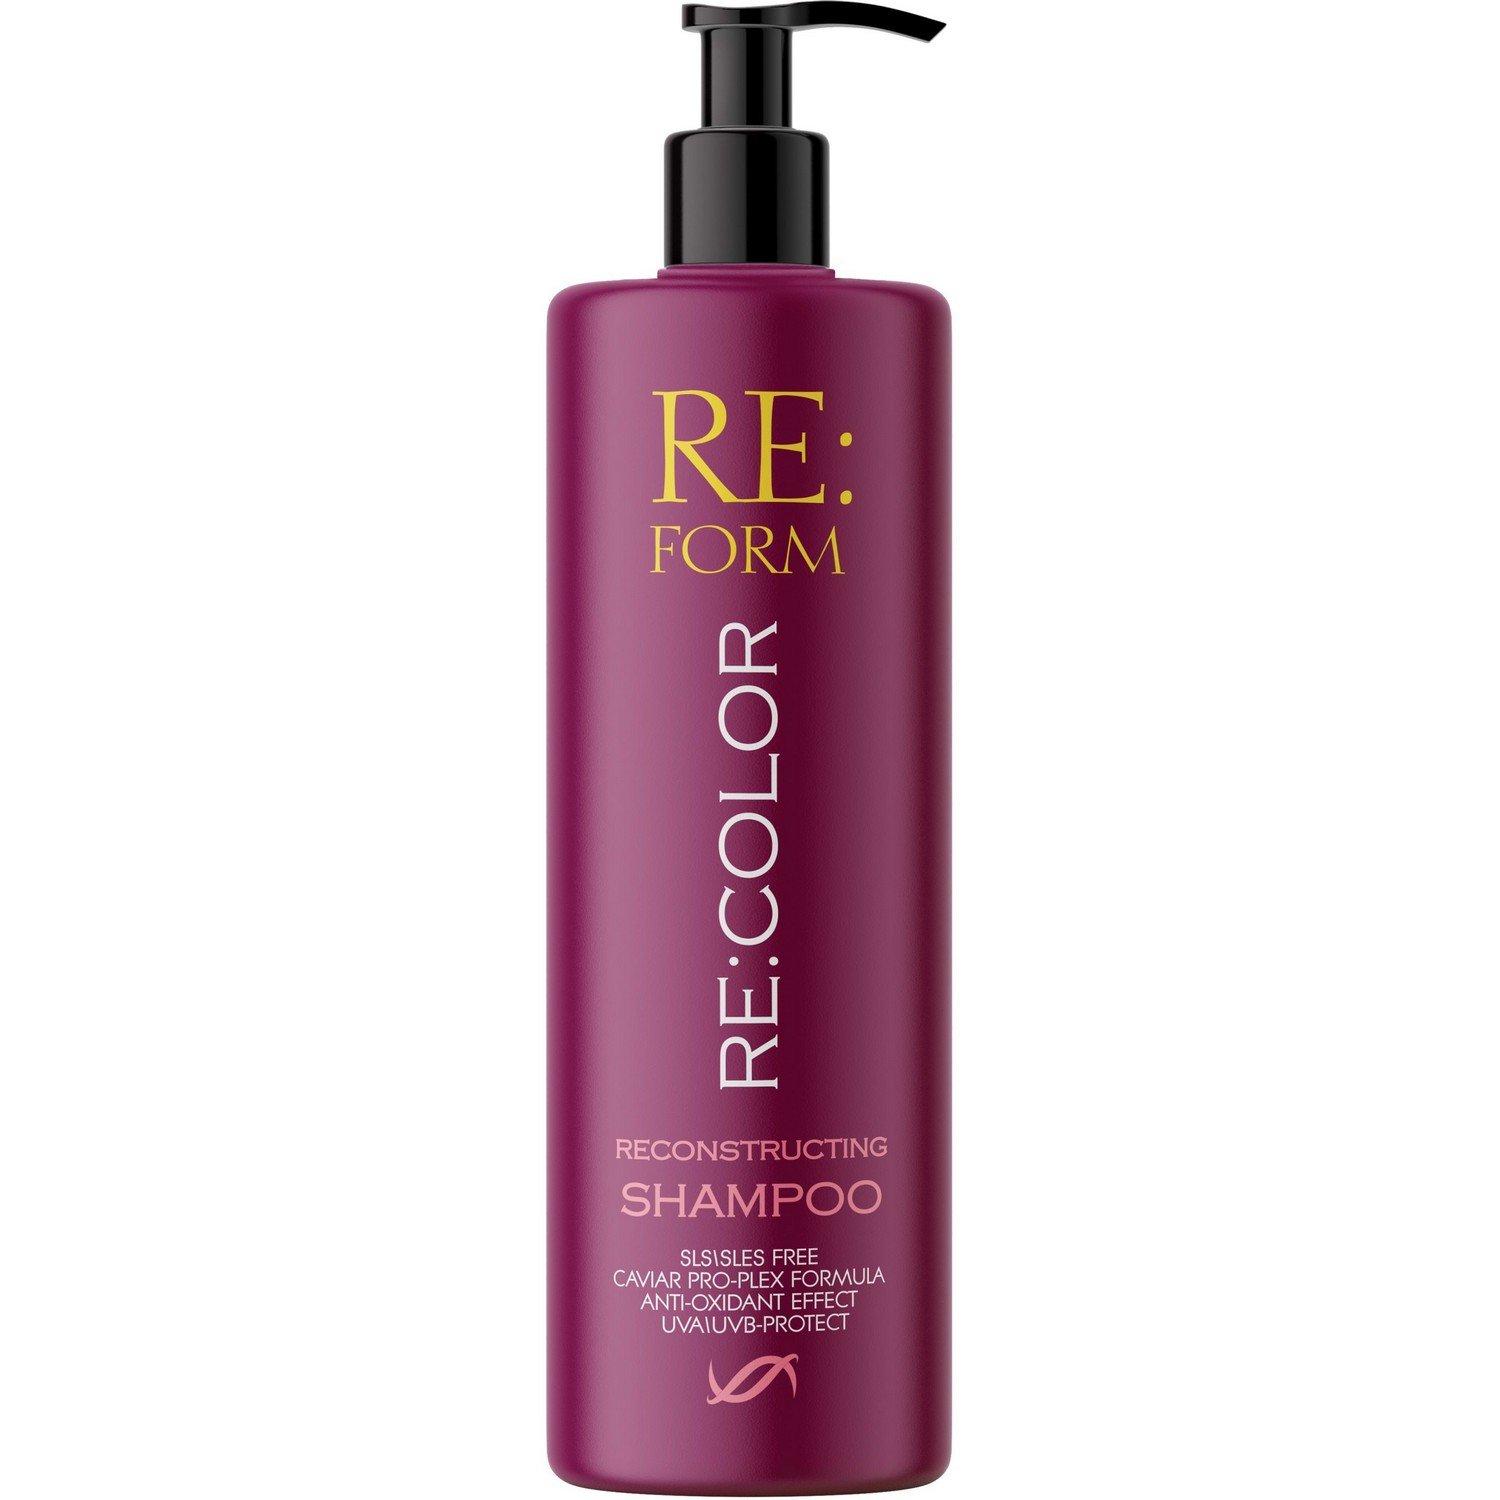 Реконструирующий шампунь Re:form Re:color Сохранение цвета и восстановление окрашенных волос, 400 мл - фото 1